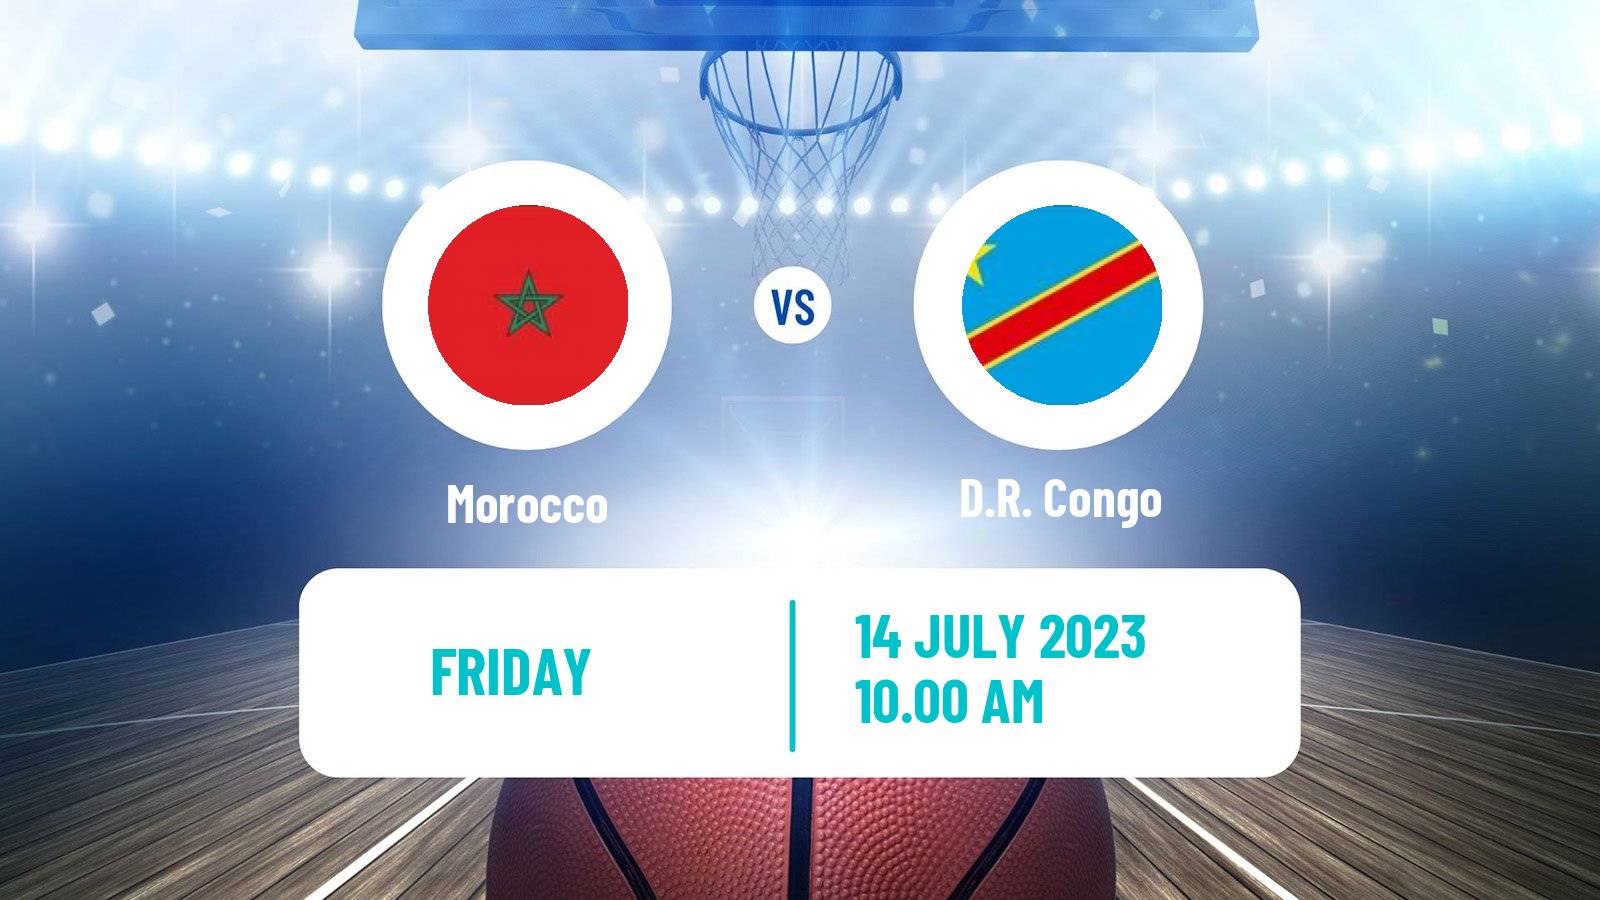 Basketball AfroCan Basketball Morocco - D.R. Congo